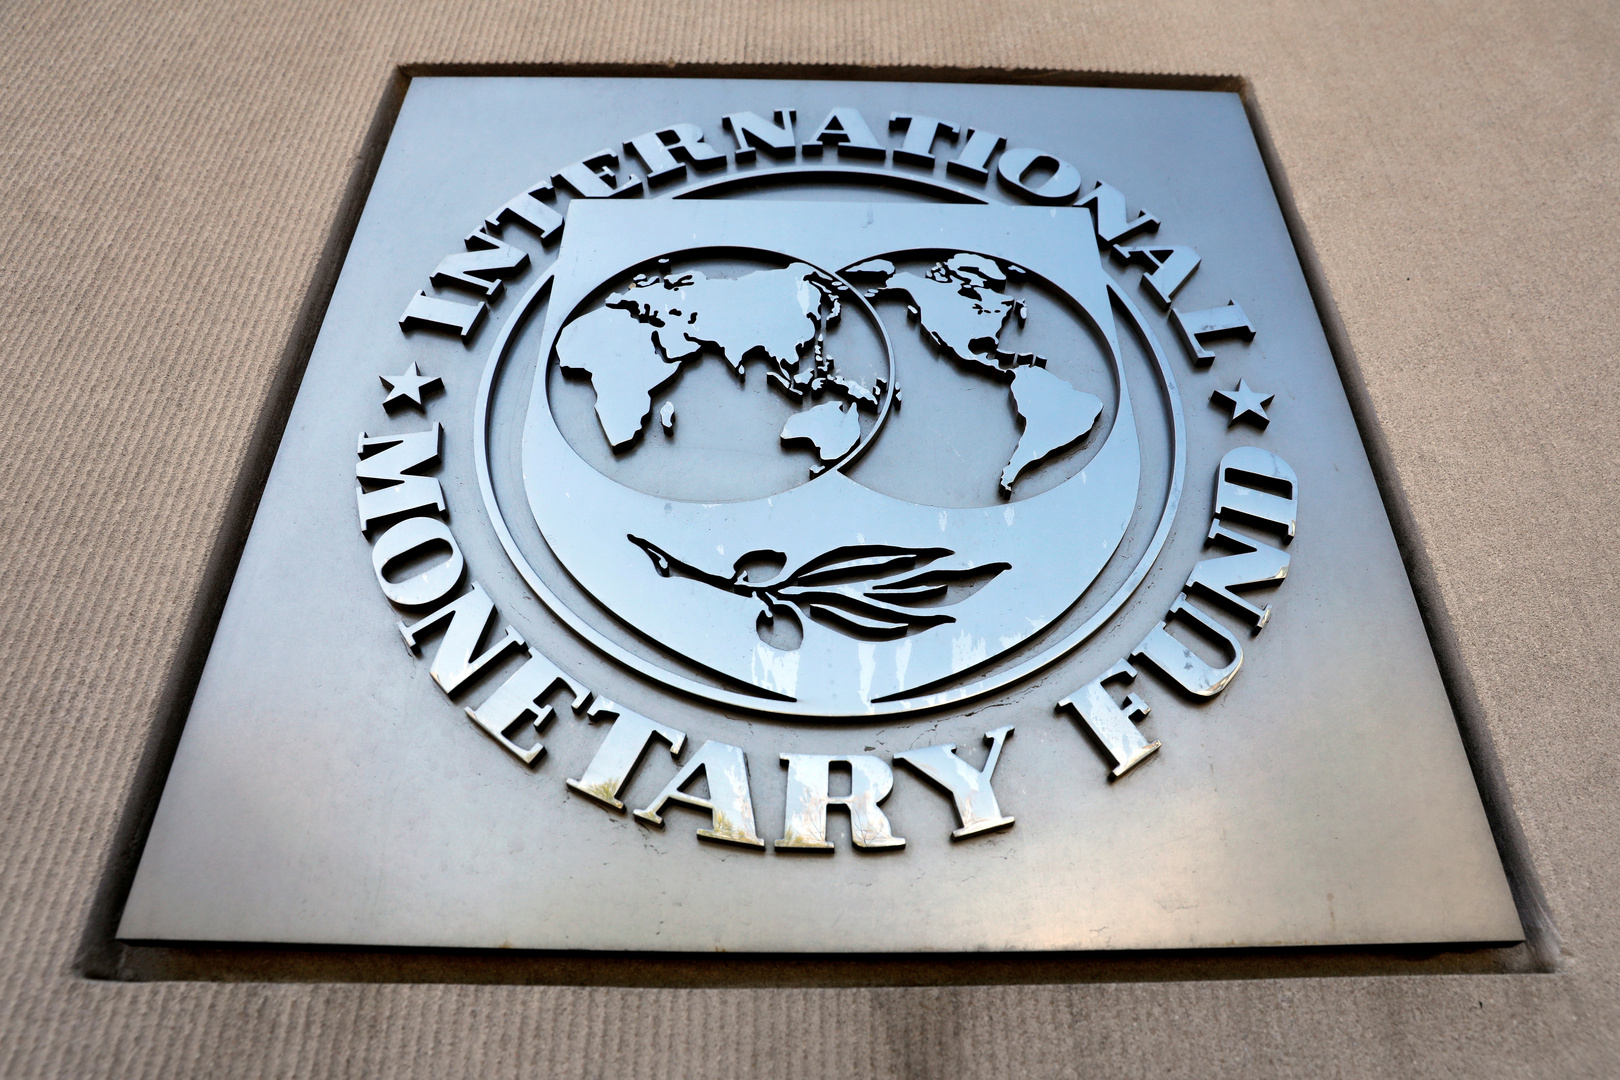 النقد الدولي يتفق مع مصر على المراجعة الأولى لترتيب ائتماني